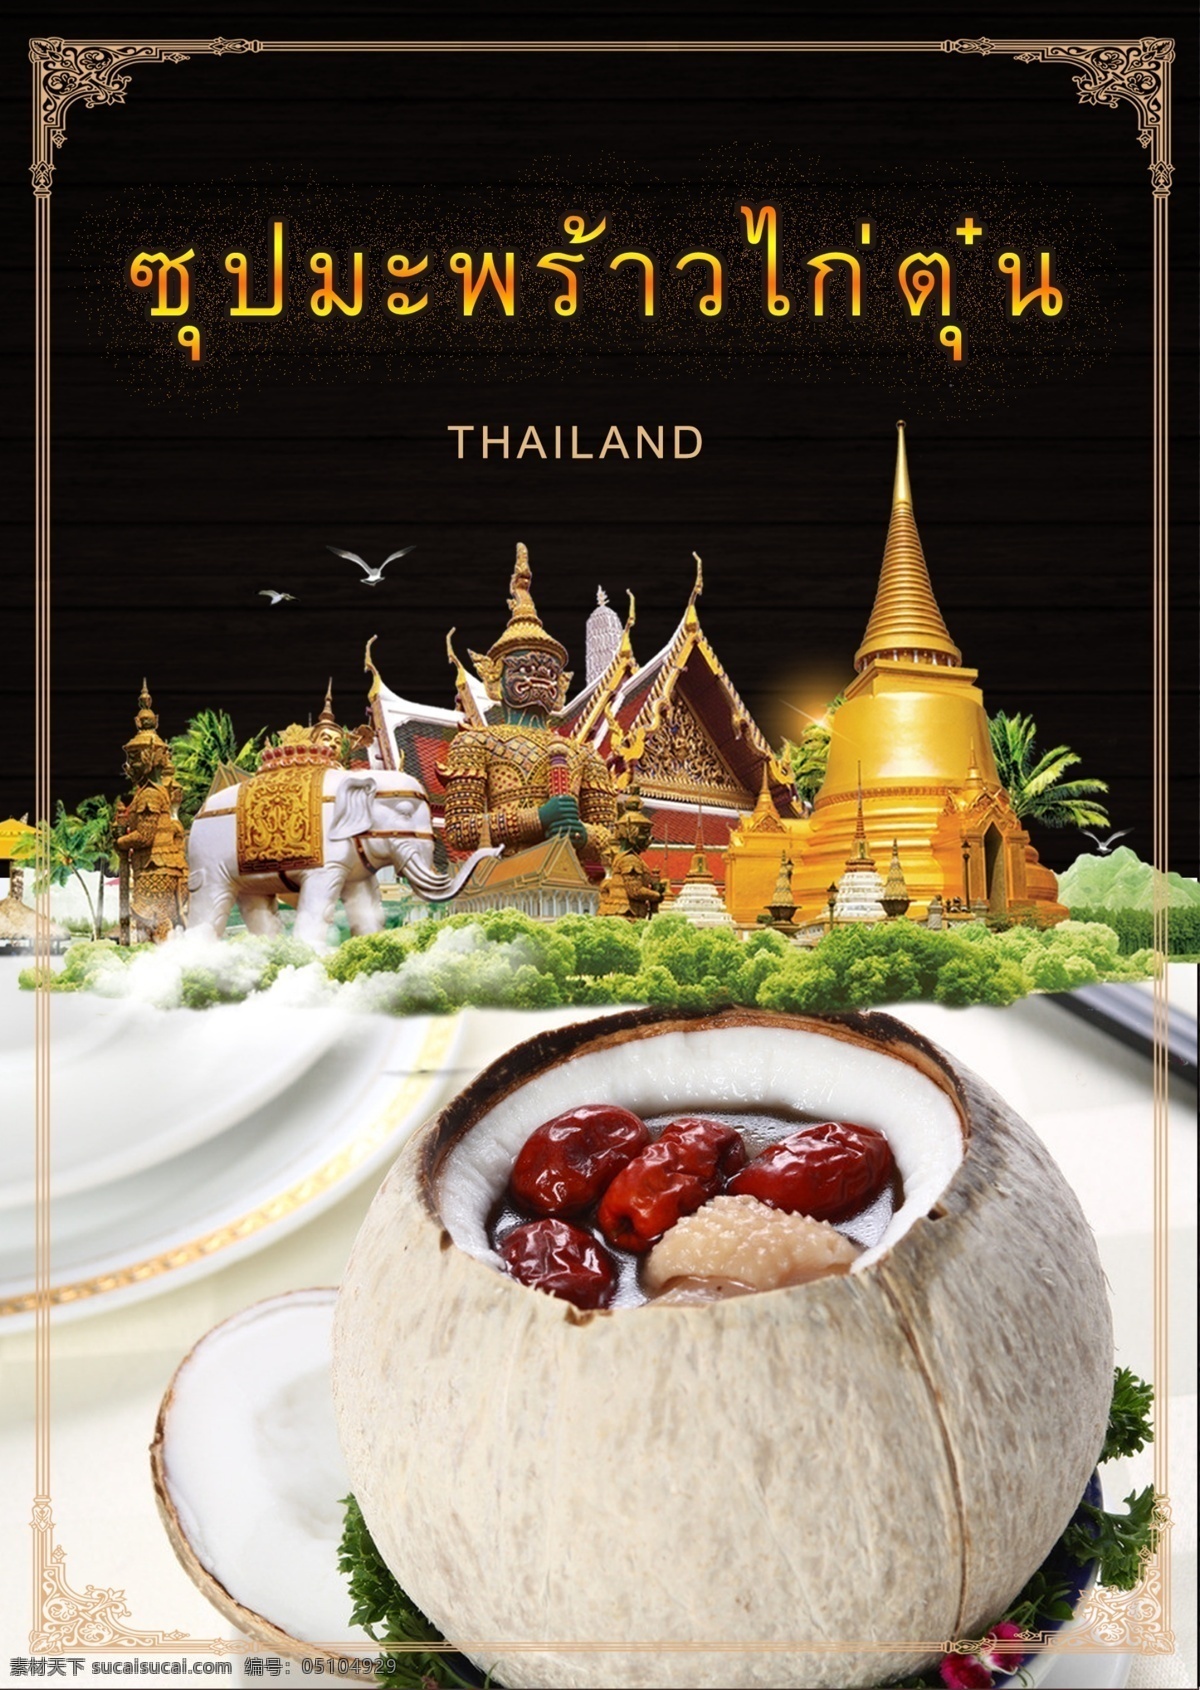 泰式 风格 美食 宫 泰国风格 动画片 餐饮 美味的食物 餐厅 广告 海报 拥护 房屋 大皇宫 寺庙 椰子树 游览 特性